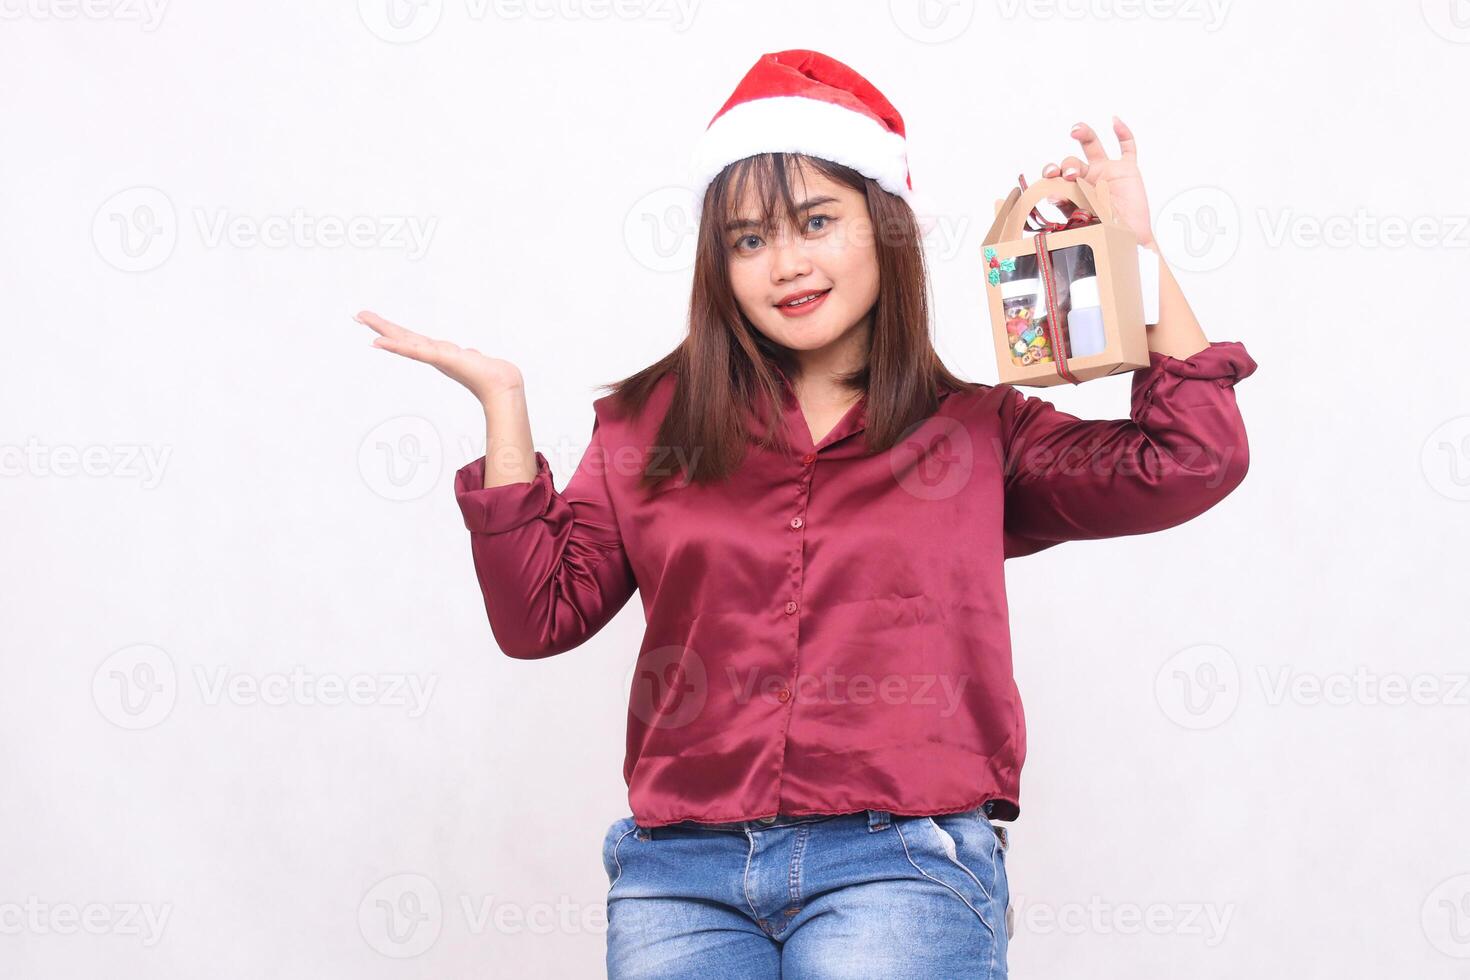 schön jung Frau Süd-Ost asiatisch lächelnd links Hand angehoben zu Geschenk Korb beim Weihnachten tragen Santa claus Hut modern rot Hemd Outfit Weiß Hintergrund zum Beförderung und Werbung foto